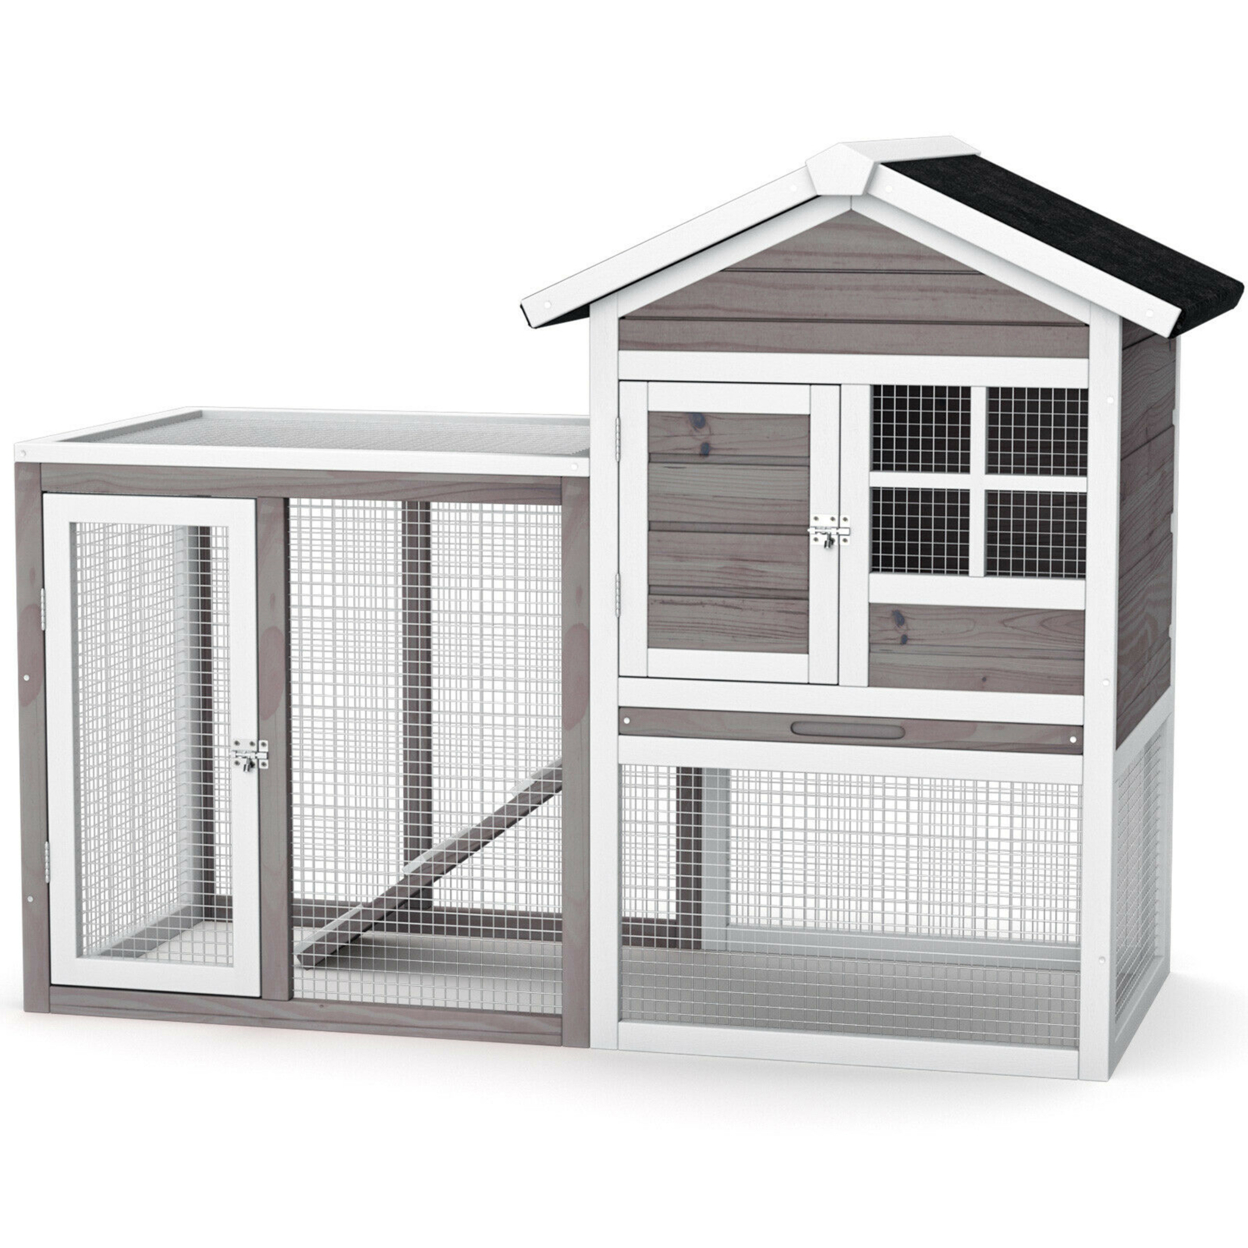 Wooden Chicken Coop Outdoor & Indoor Small Rabbit Hutch W/ Run - Grey